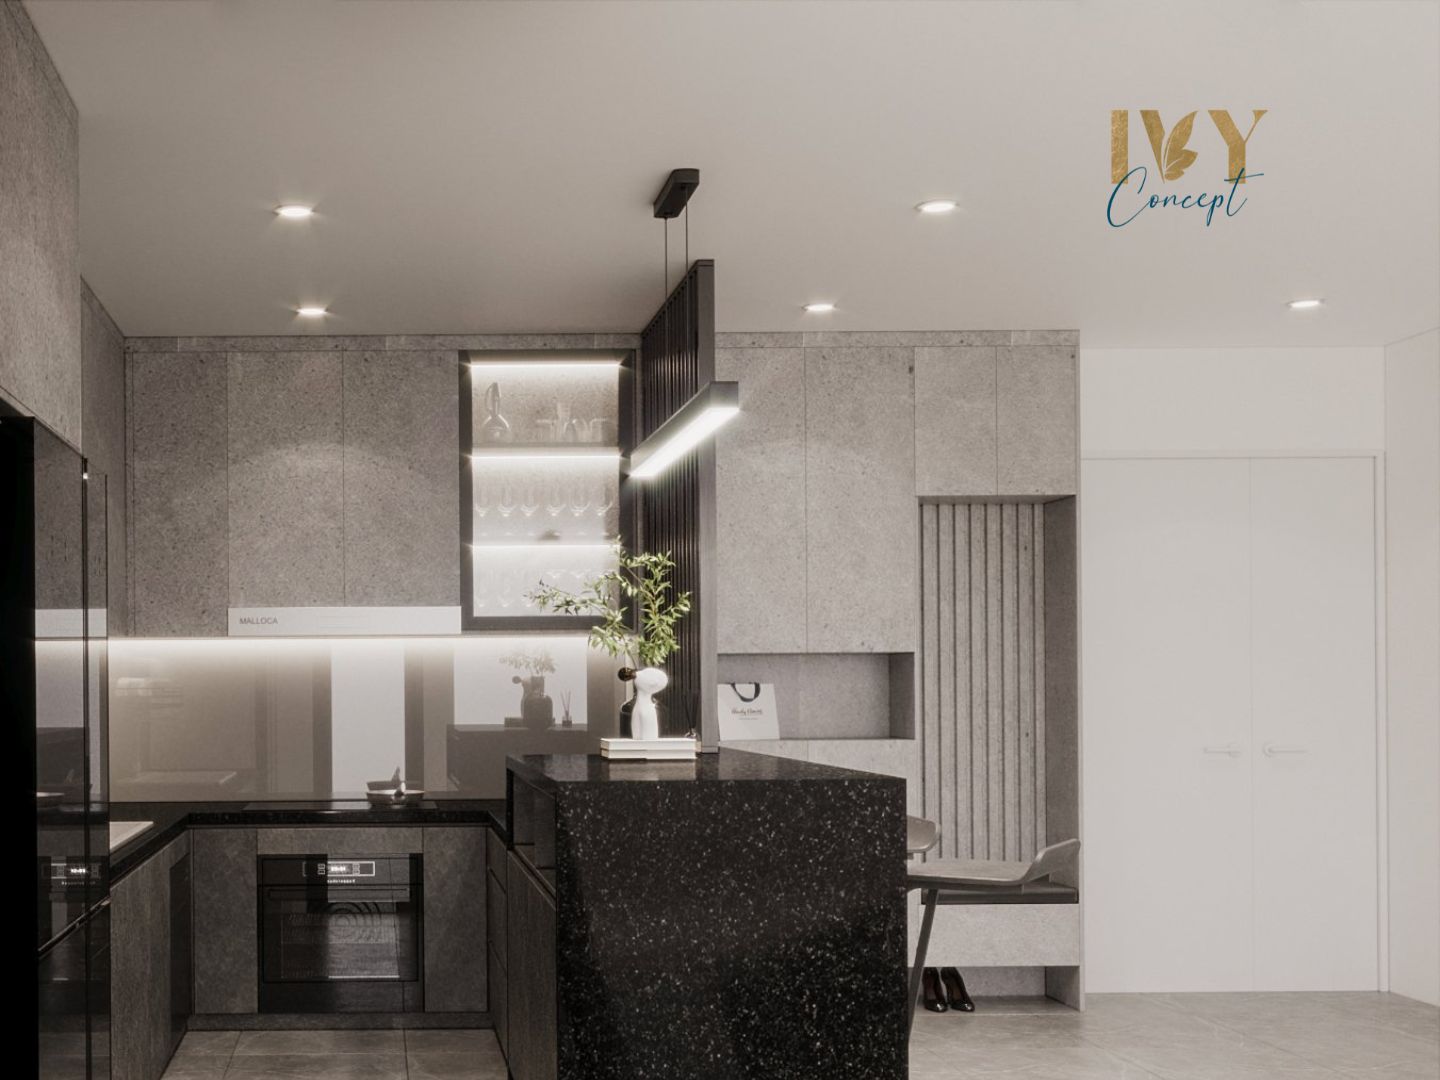 Lối vào, phòng bếp, phong cách Tối giản Minimalist, thiết kế concept nội thất, căn hộ PetroVietnam Landmark